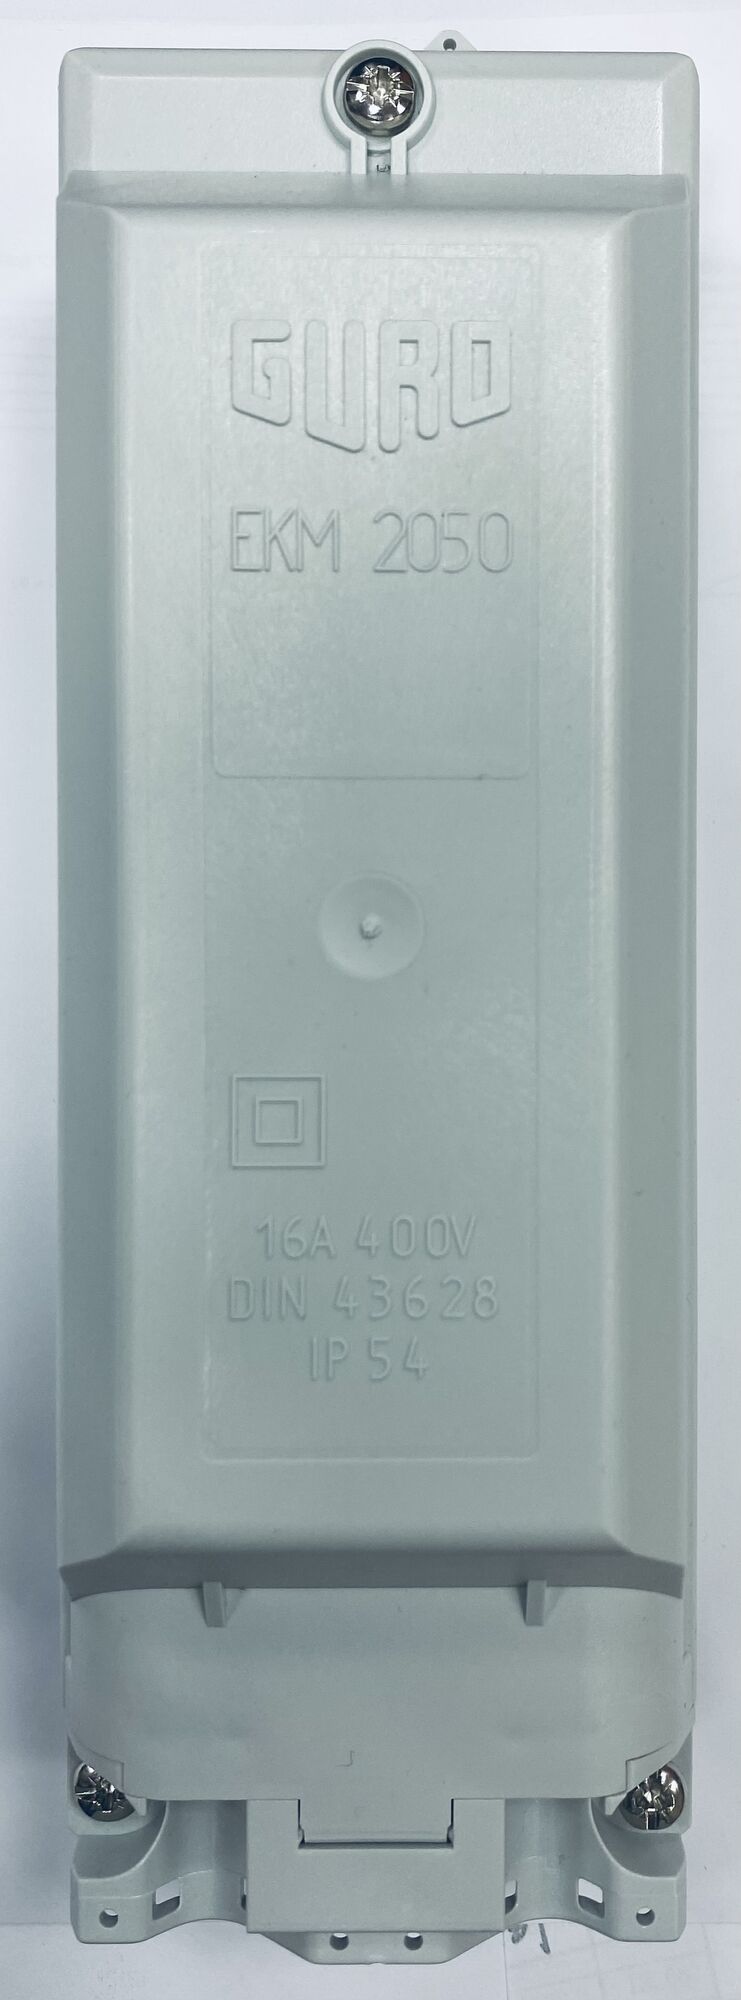 Соединительная коробка EKM-2050FH-2D1-5S/U (CS0558-000)